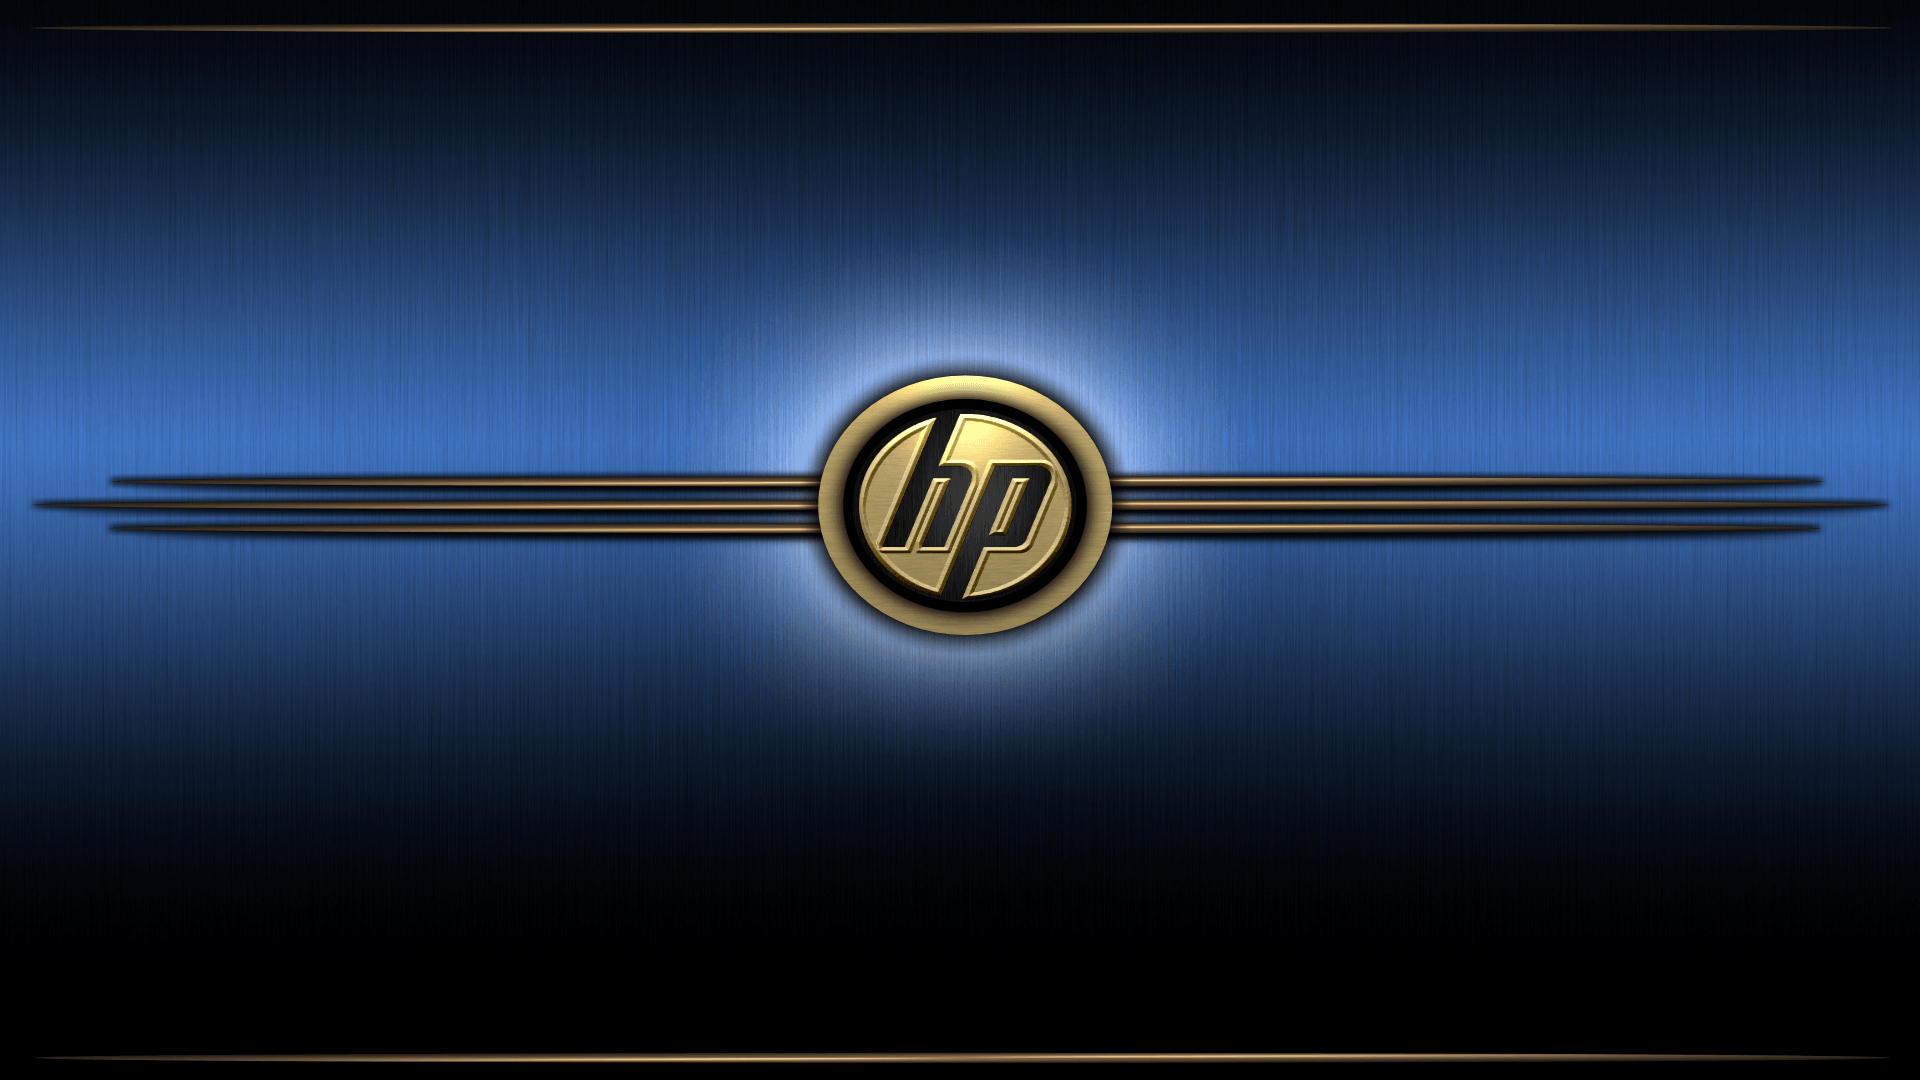 Wallpaper.wiki Desktop HP Logo Wallpaper PIC WPC005299